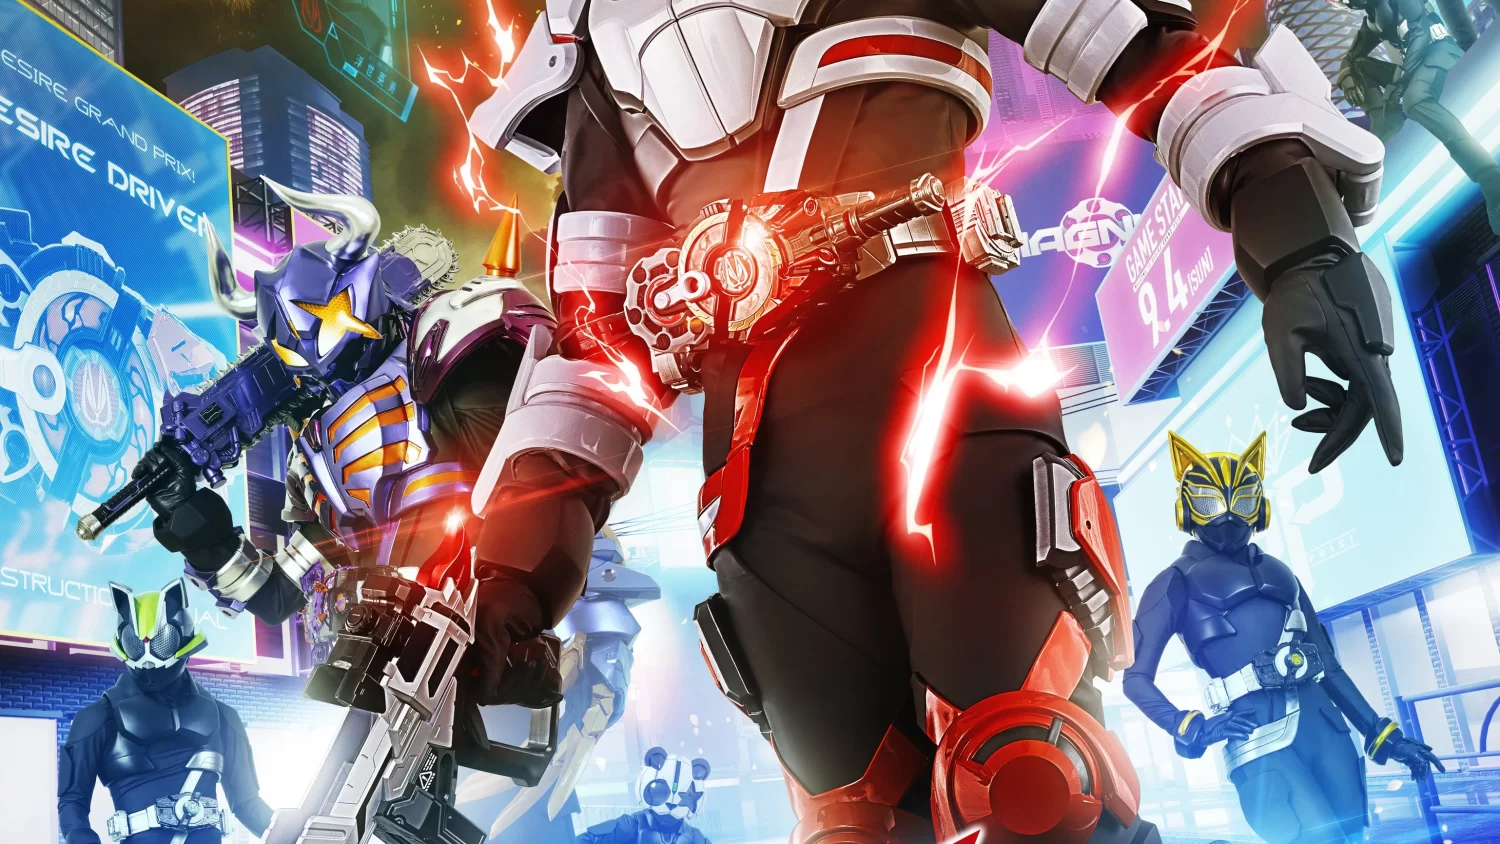 Kamen_Rider_Geats_poster